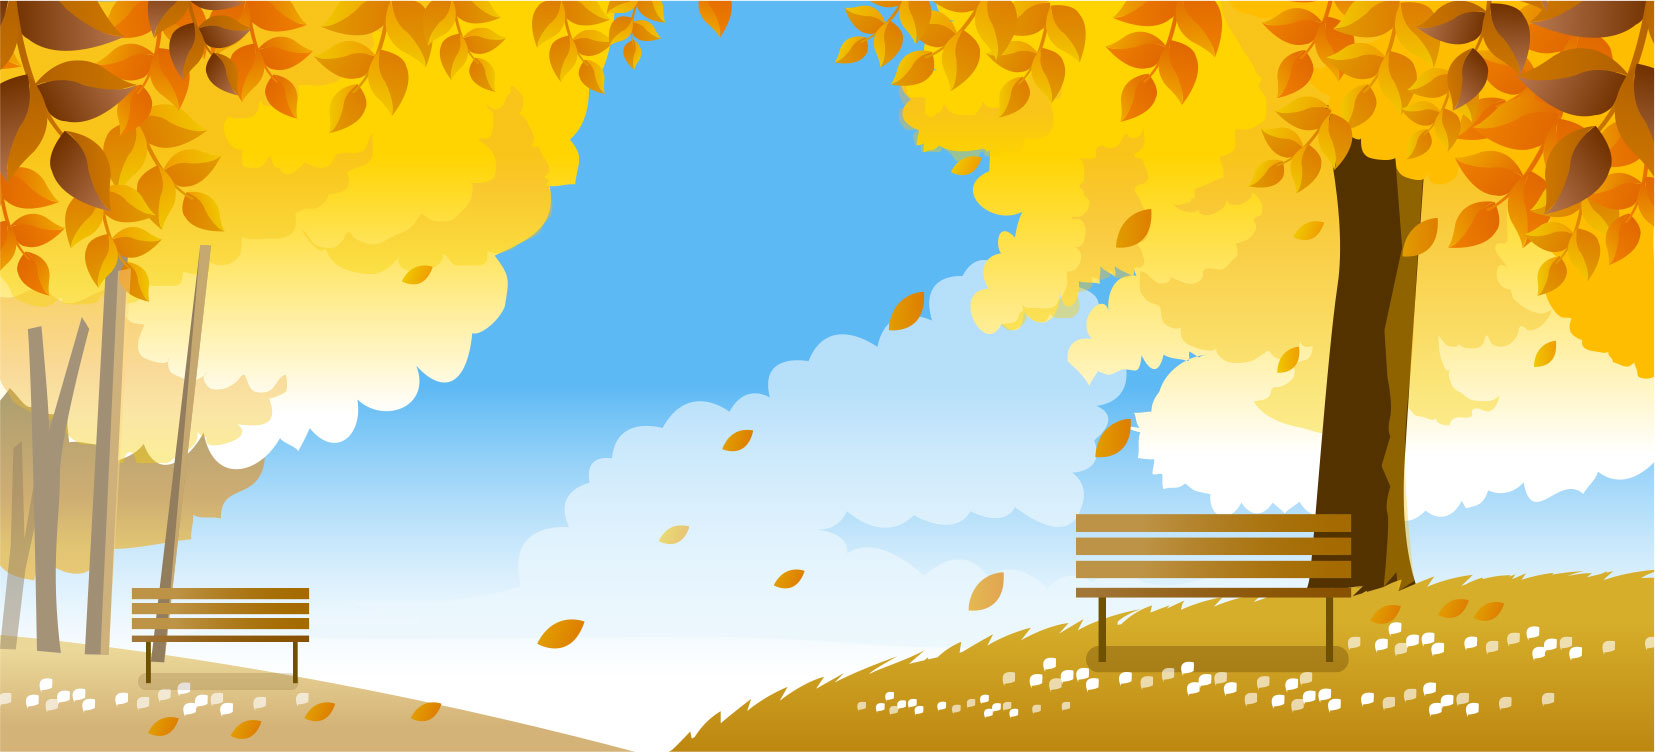 秋のイラストno 2 落葉の公園 無料のフリー素材集 花鳥風月